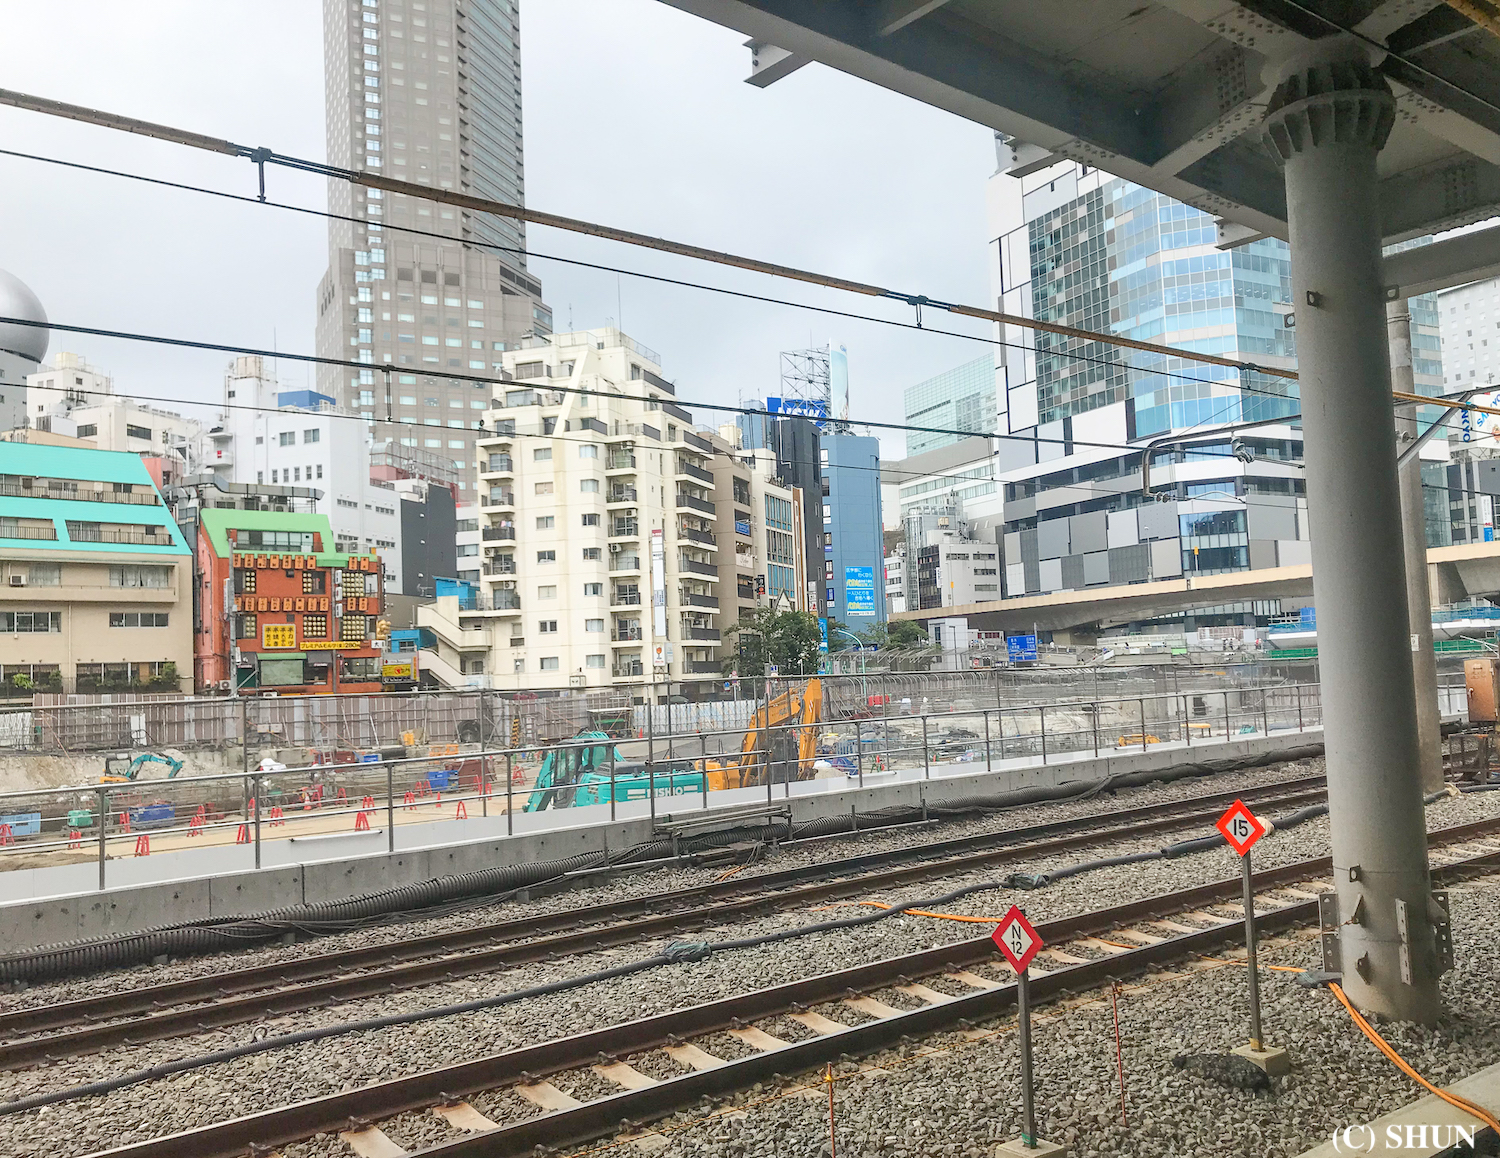 渋谷駅 湘南新宿ライナーのホームから眺める渋谷桜丘地区とﾌｸﾗｽ方面。再開発が進んでいる。2019年8月12日。撮影：SHUN